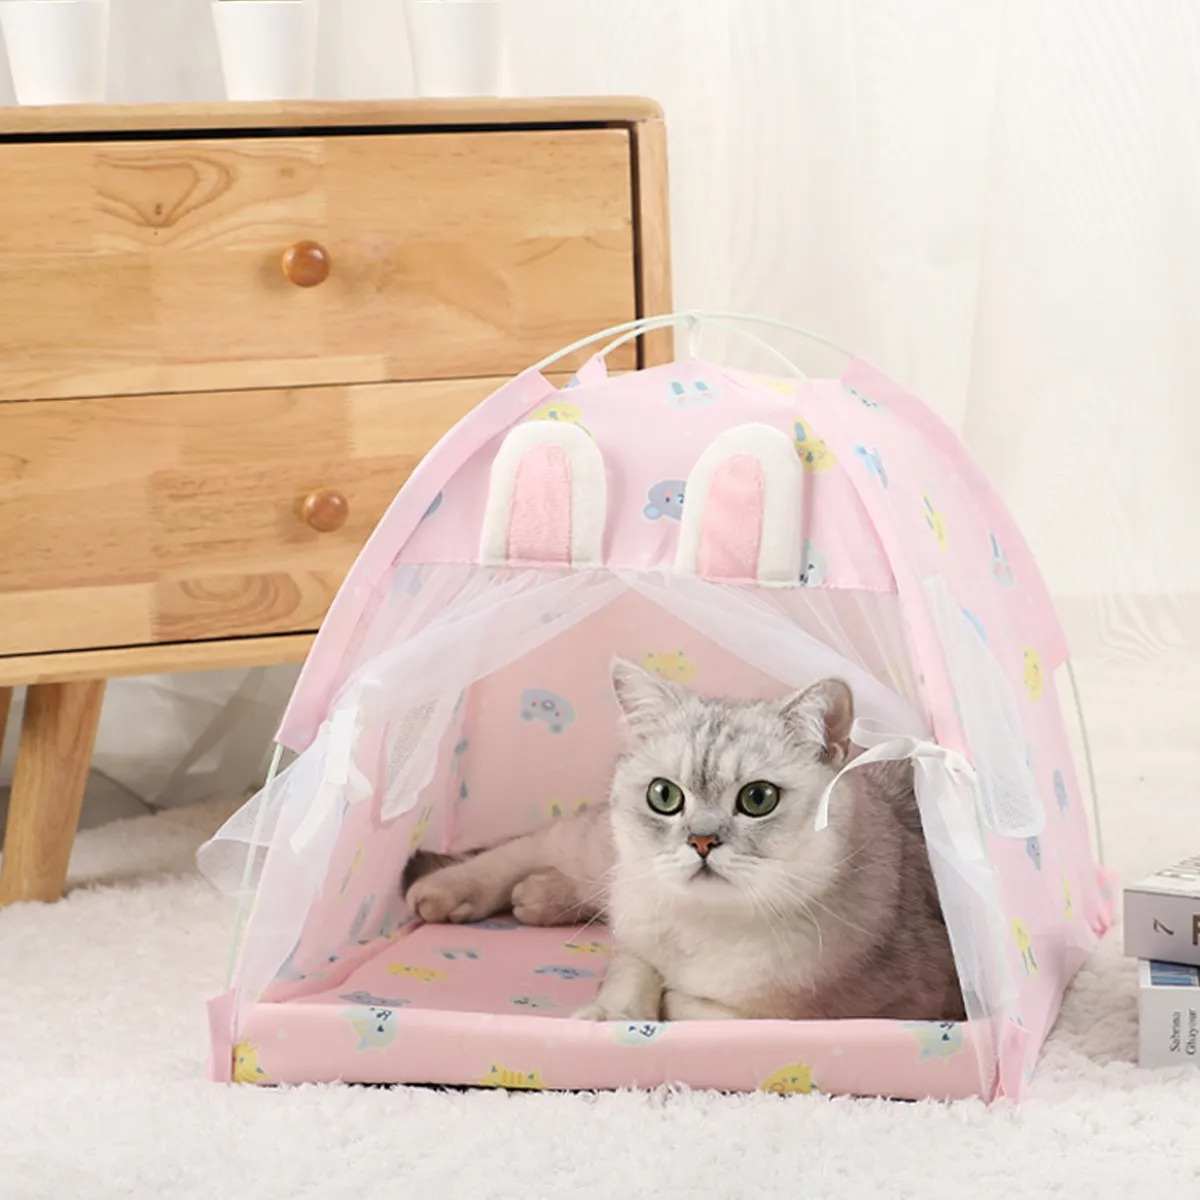 CozyTent™ Stressaflastende Telt til Katte